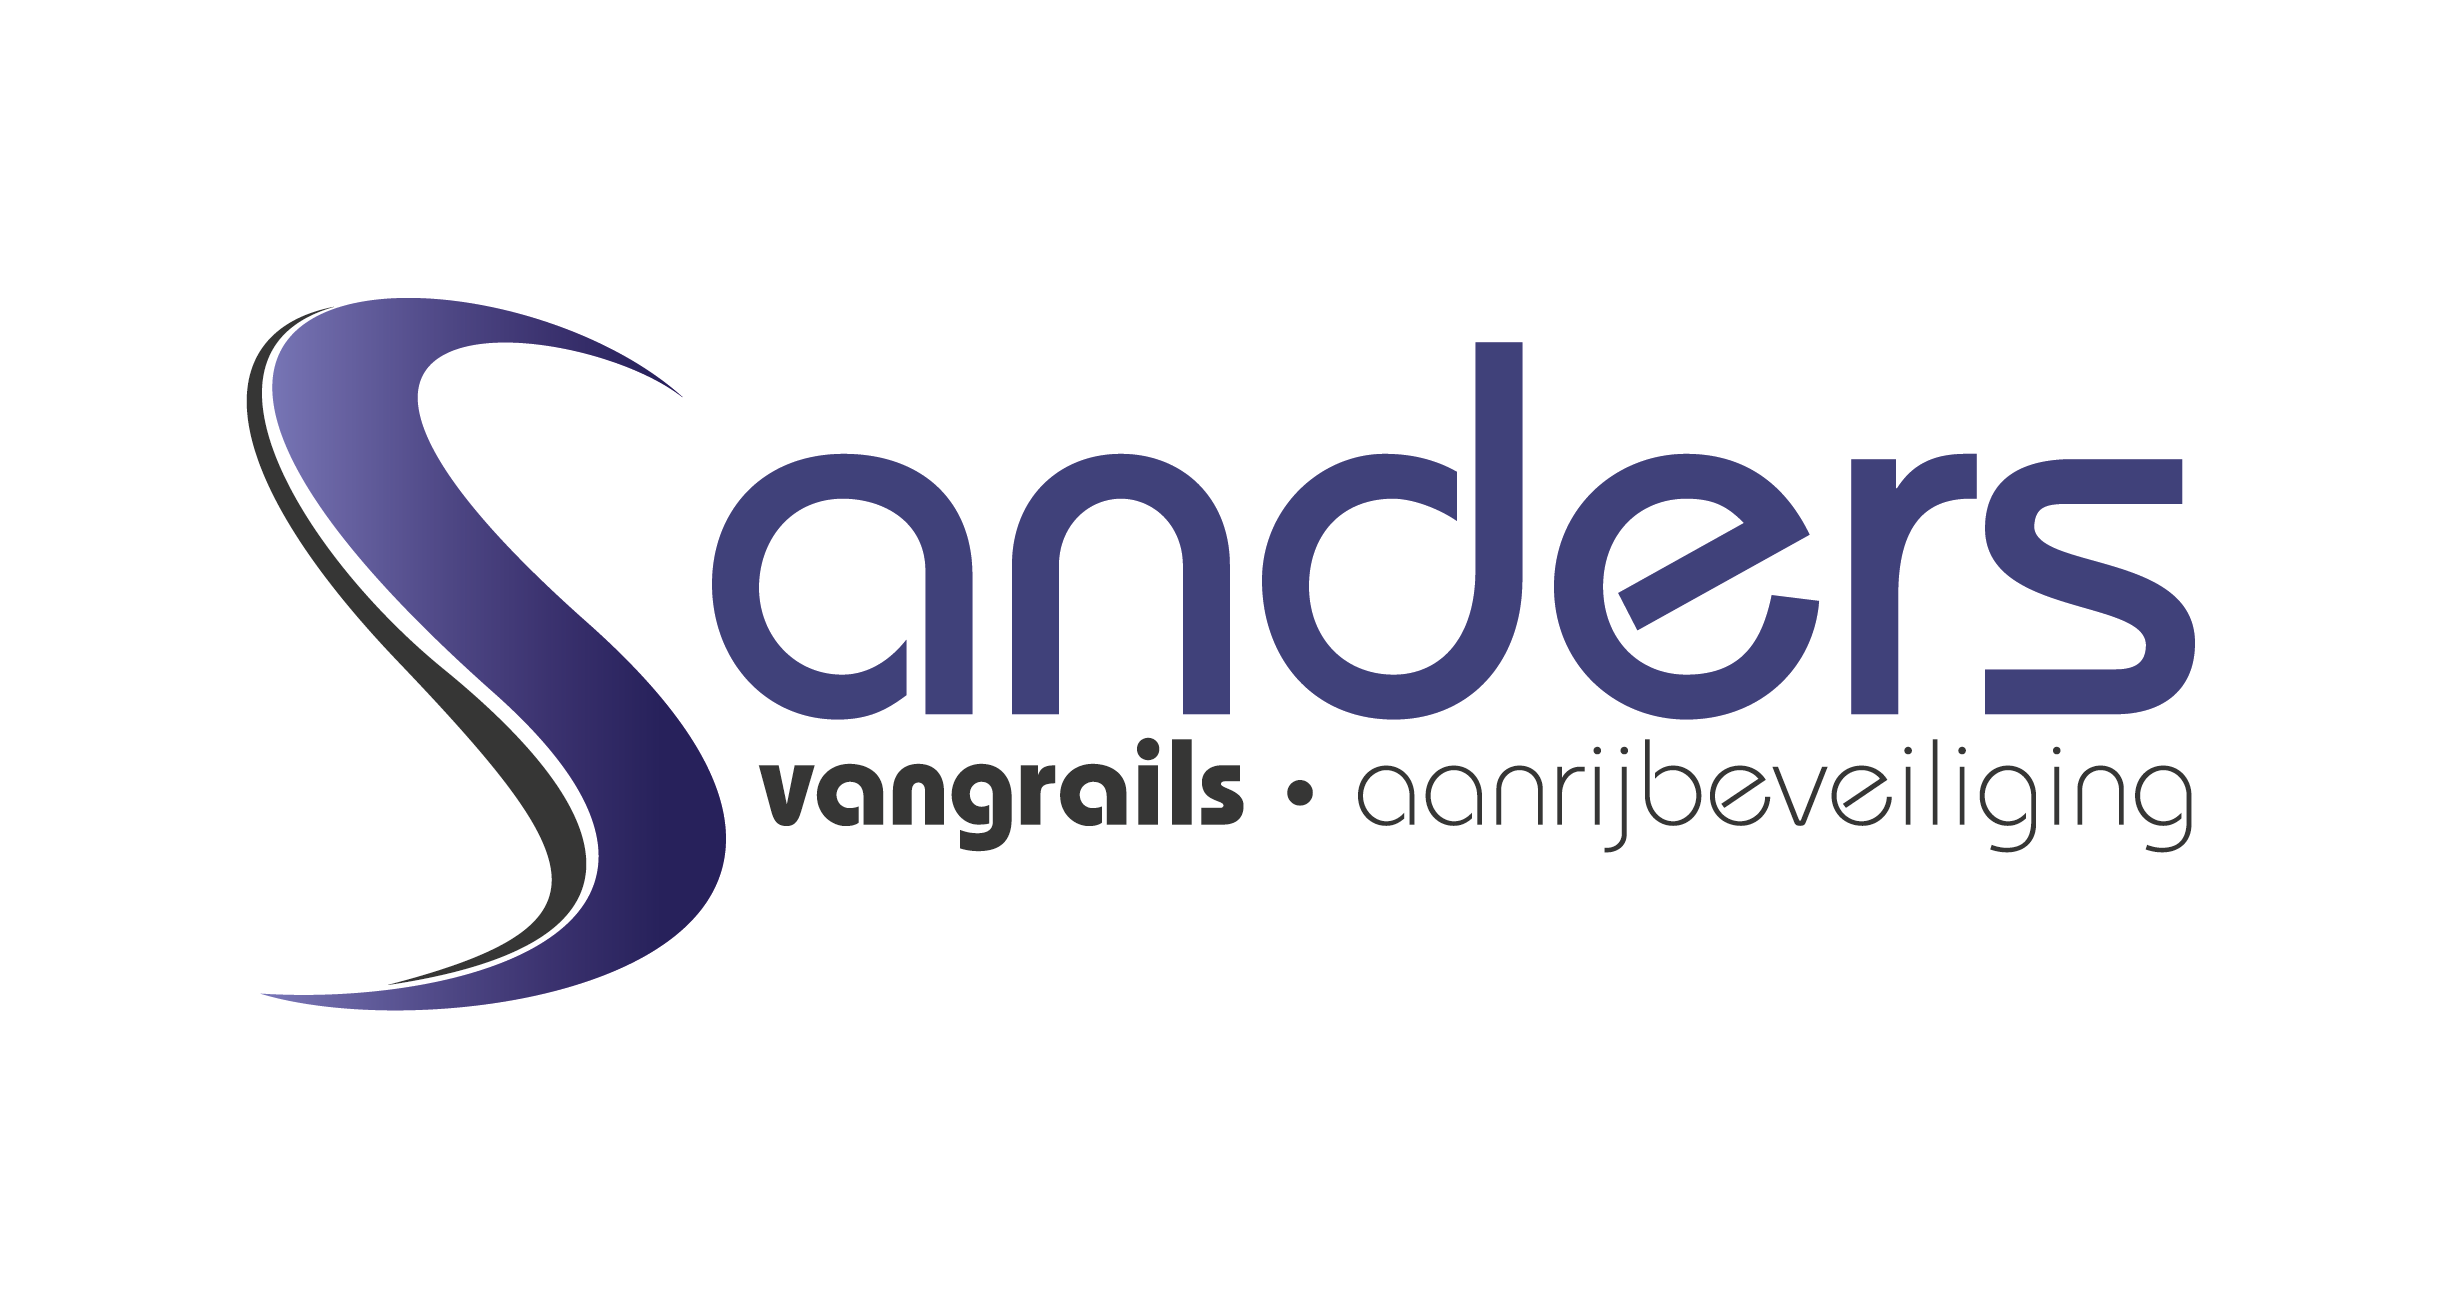 Vangrails Sanders